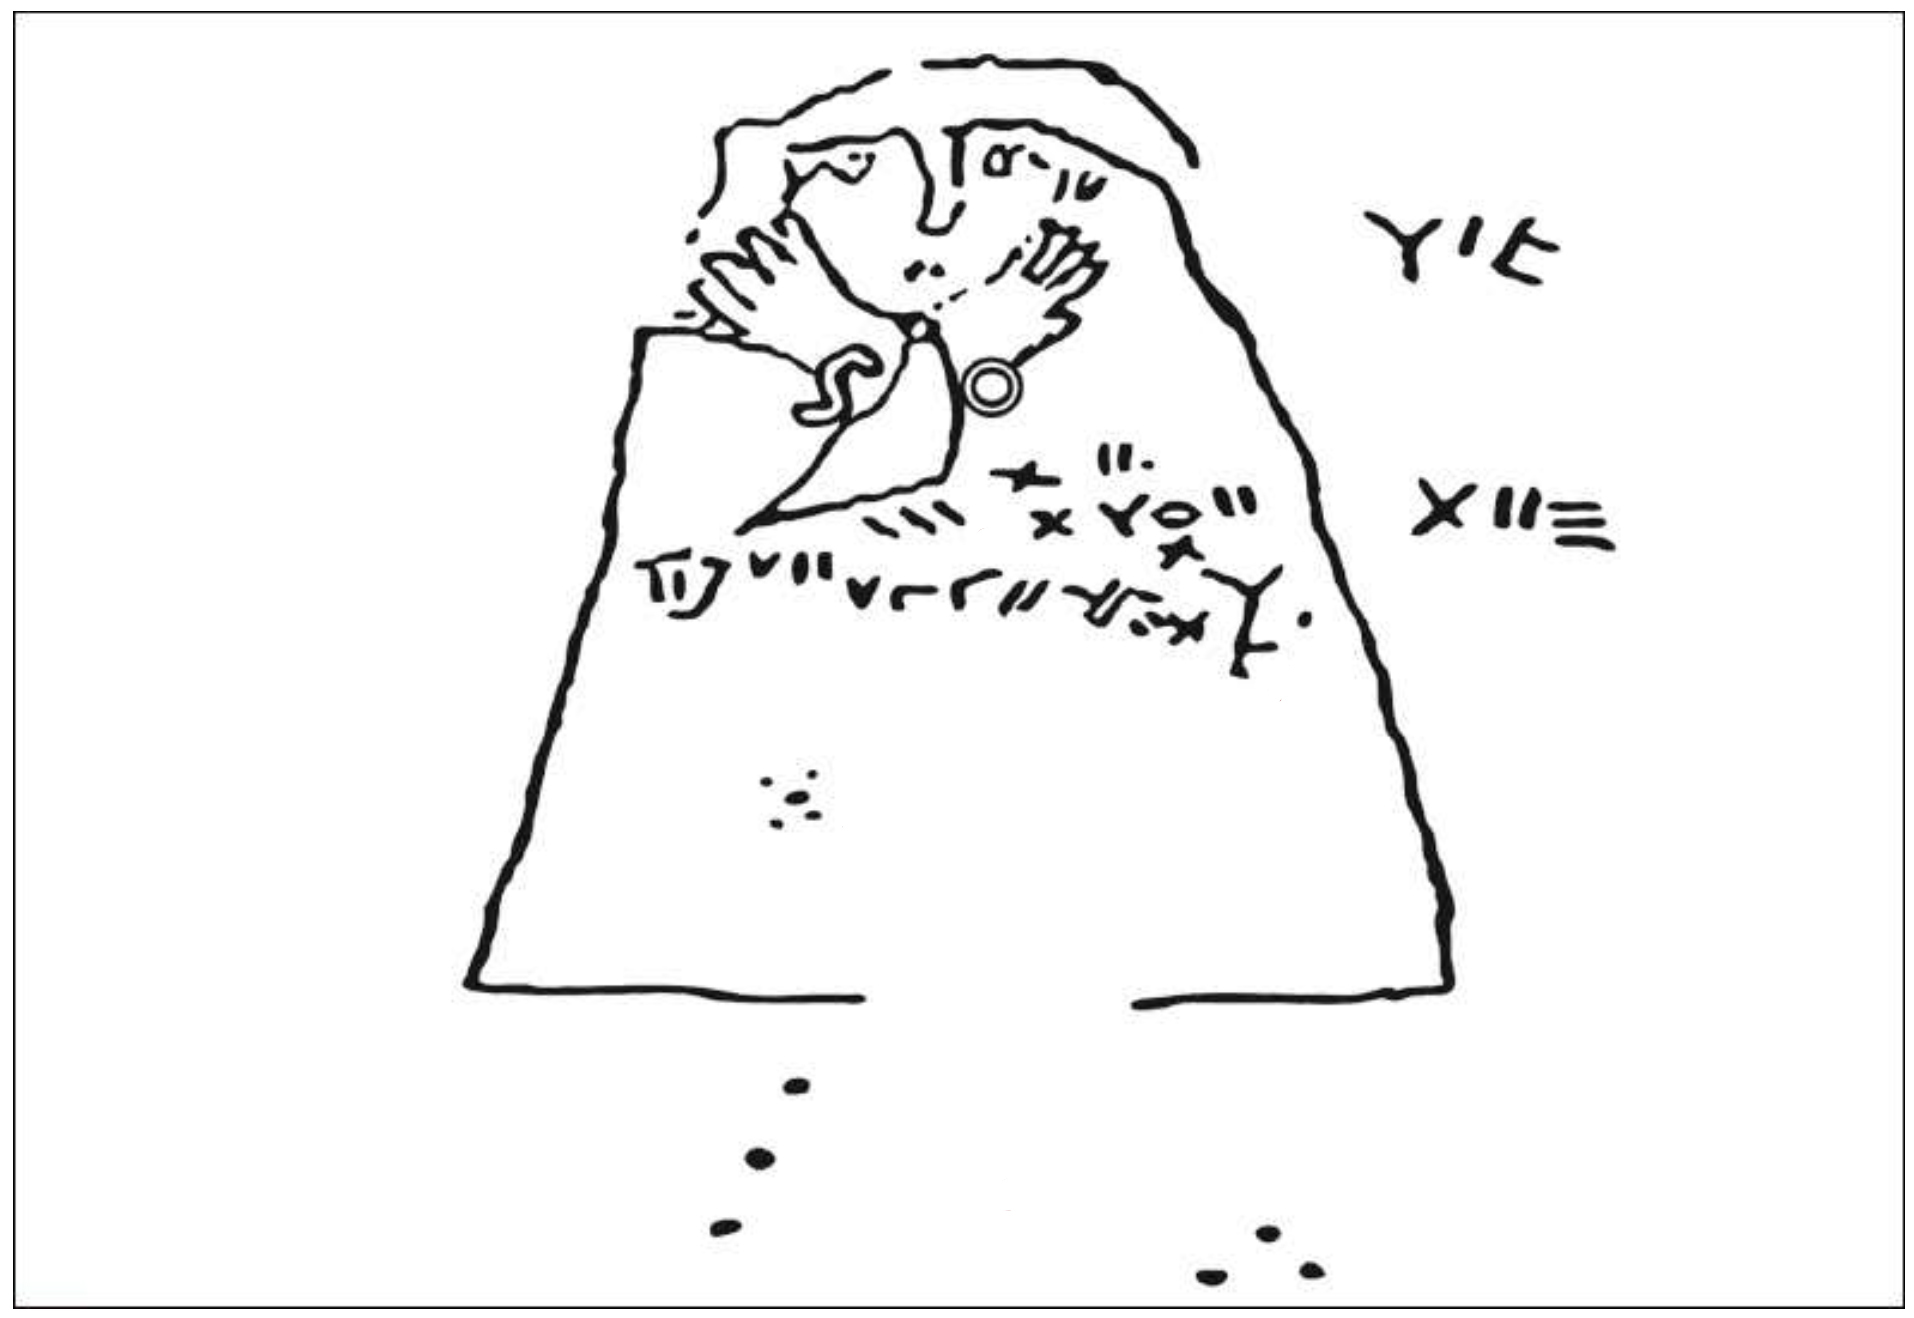 Figure 6. Récapitulatif des caractères formant l’inscription, (a) Visage, yeux exorbités, les lettres YIR figurent entre les mains jointes, suggérant des bracelets, (b) Caractères en forme de points, en usage dans la tafinaq saharienne, (c) Autres caractères en forme de points, en usage dans la tafinaq saharienne, (d) Tagenza « Le front ». (e) Groupe de caractères formant le corps du texte. On remarquera la première ligne, tendue vers le haut, qui se lit de droite à gauche. Elle présente une extrémité en boustrophédon, c’est-à-dire projetée vers le bas, à la manière de certaines gravures rupestres sahariennes. La seconde ligne, qui se lit également de droite à gauche, est infléchie vers le bas. (D’après un dessin du baron de Baye, reproduit in Gorce)